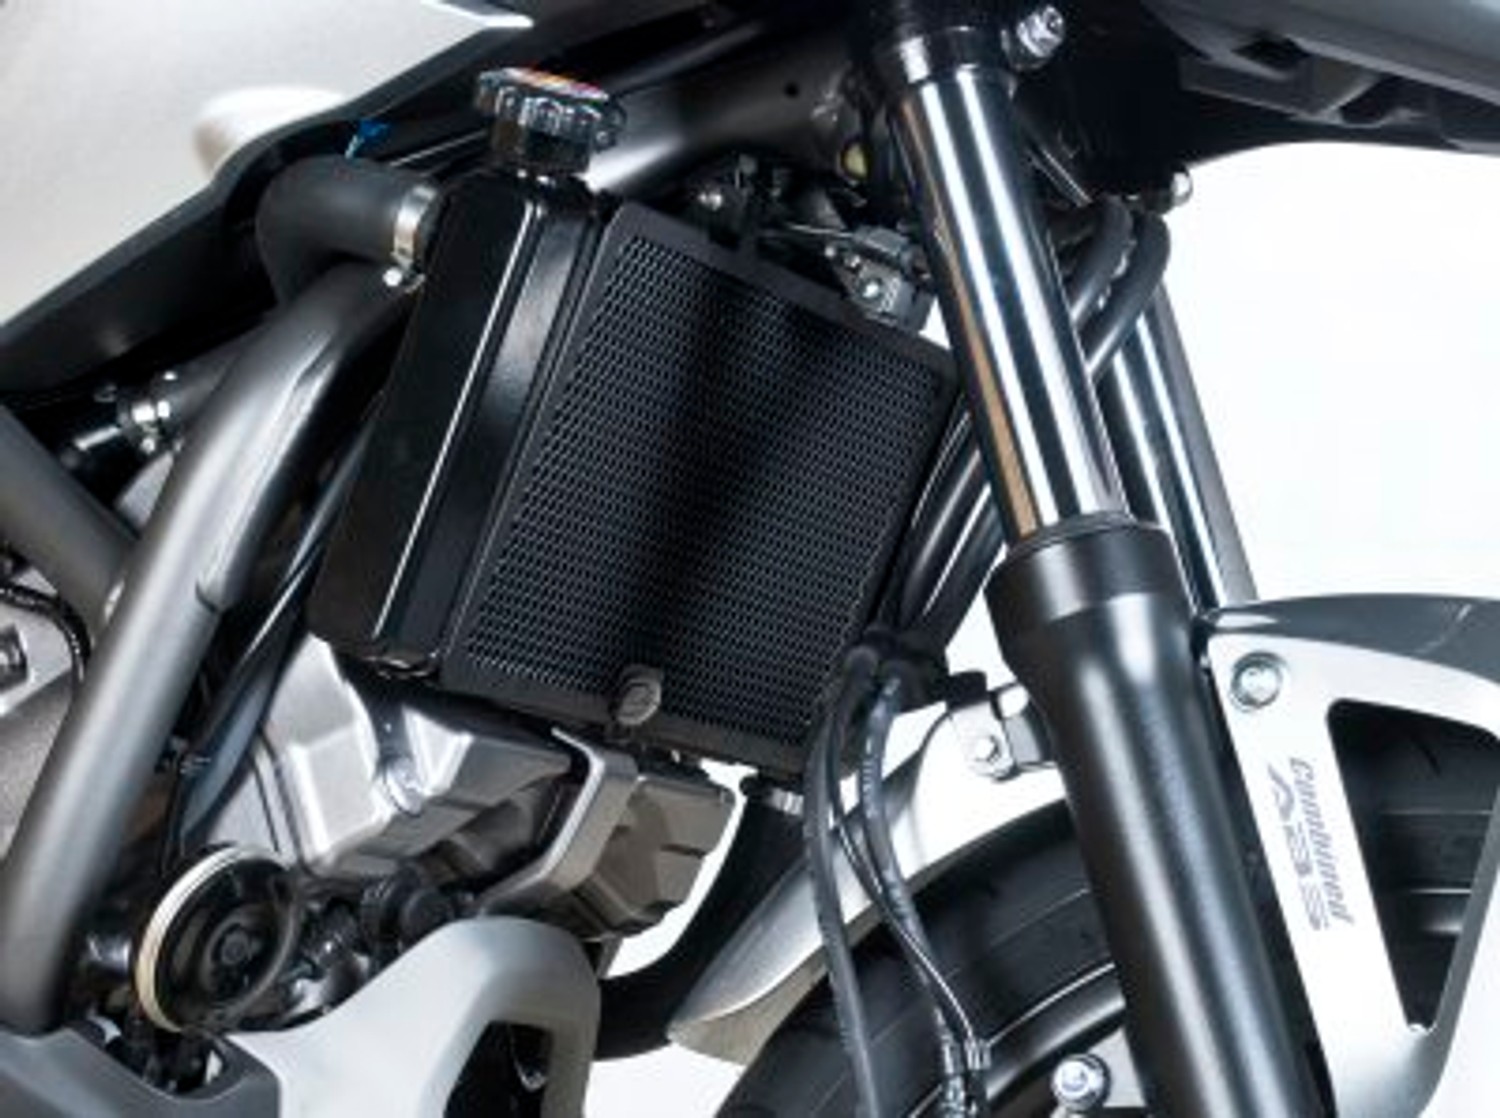 NMGD Motociclo radiatore Lega per Honda Protezione della Copertura della Guardia del Radiatore di Alluminio del Motociclo X ADV X-ADV 750 2017 2018 2019 2020 XADV 750 Color : Black